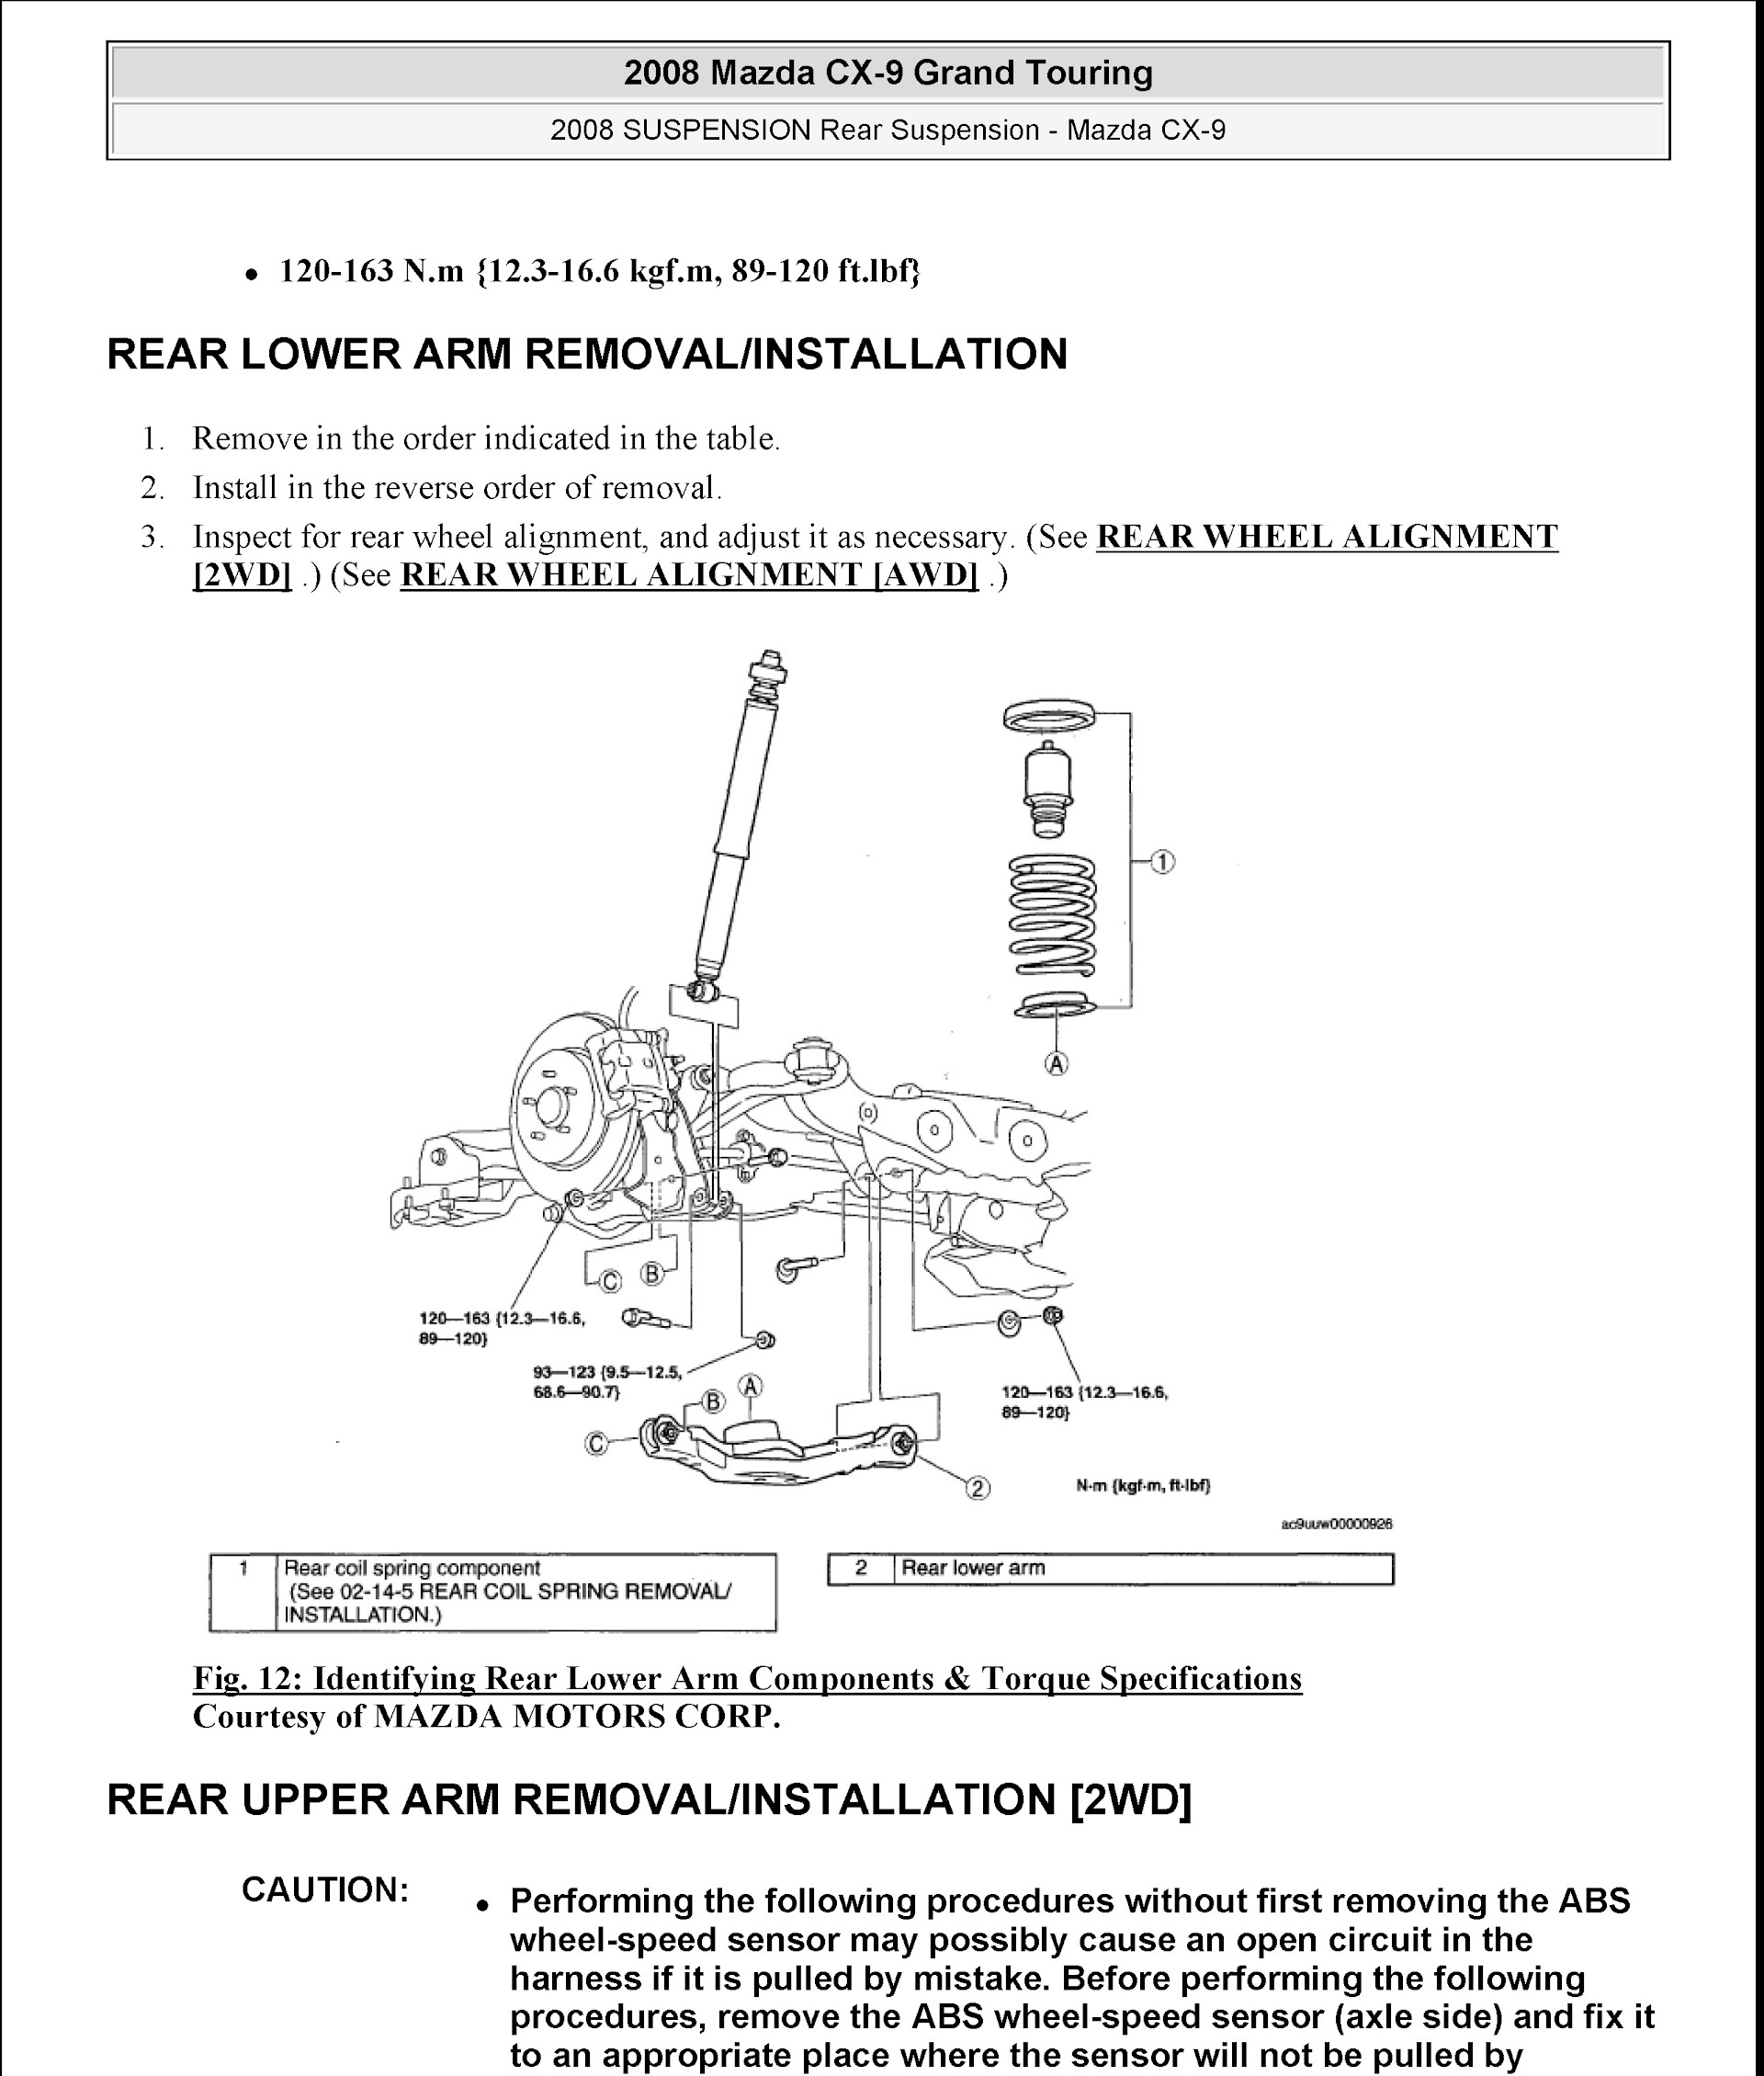 2008 Mazda CX-9 Repair Manual "Grand Touring", Rear Suspension